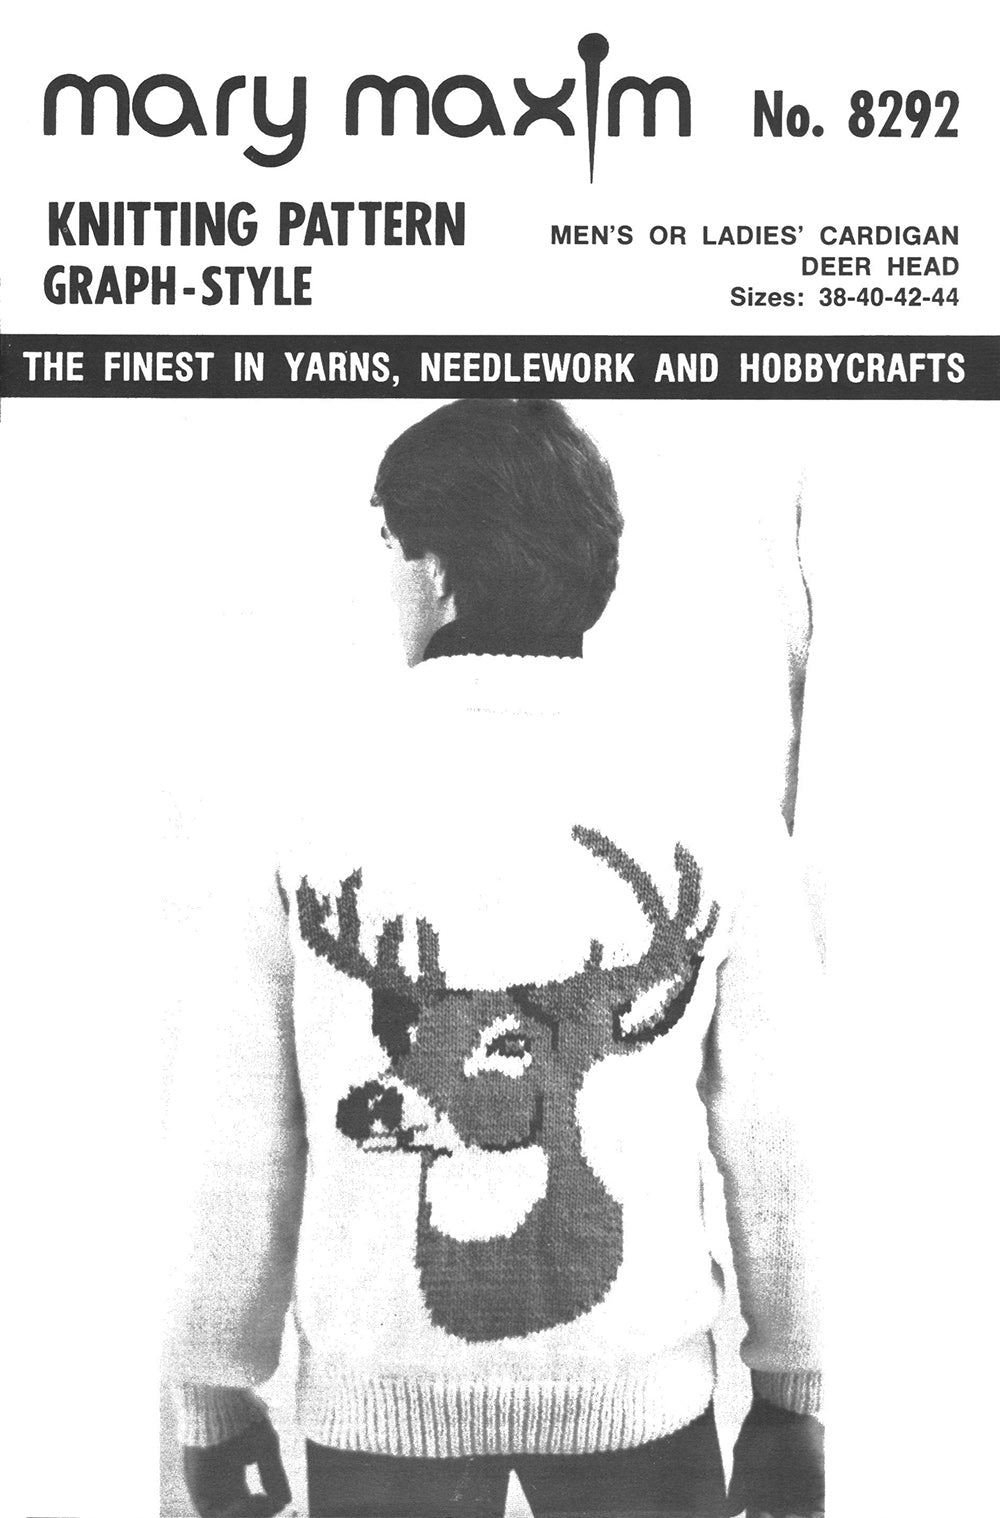 Men's or Ladies' Cardigan - Deer head Pattern